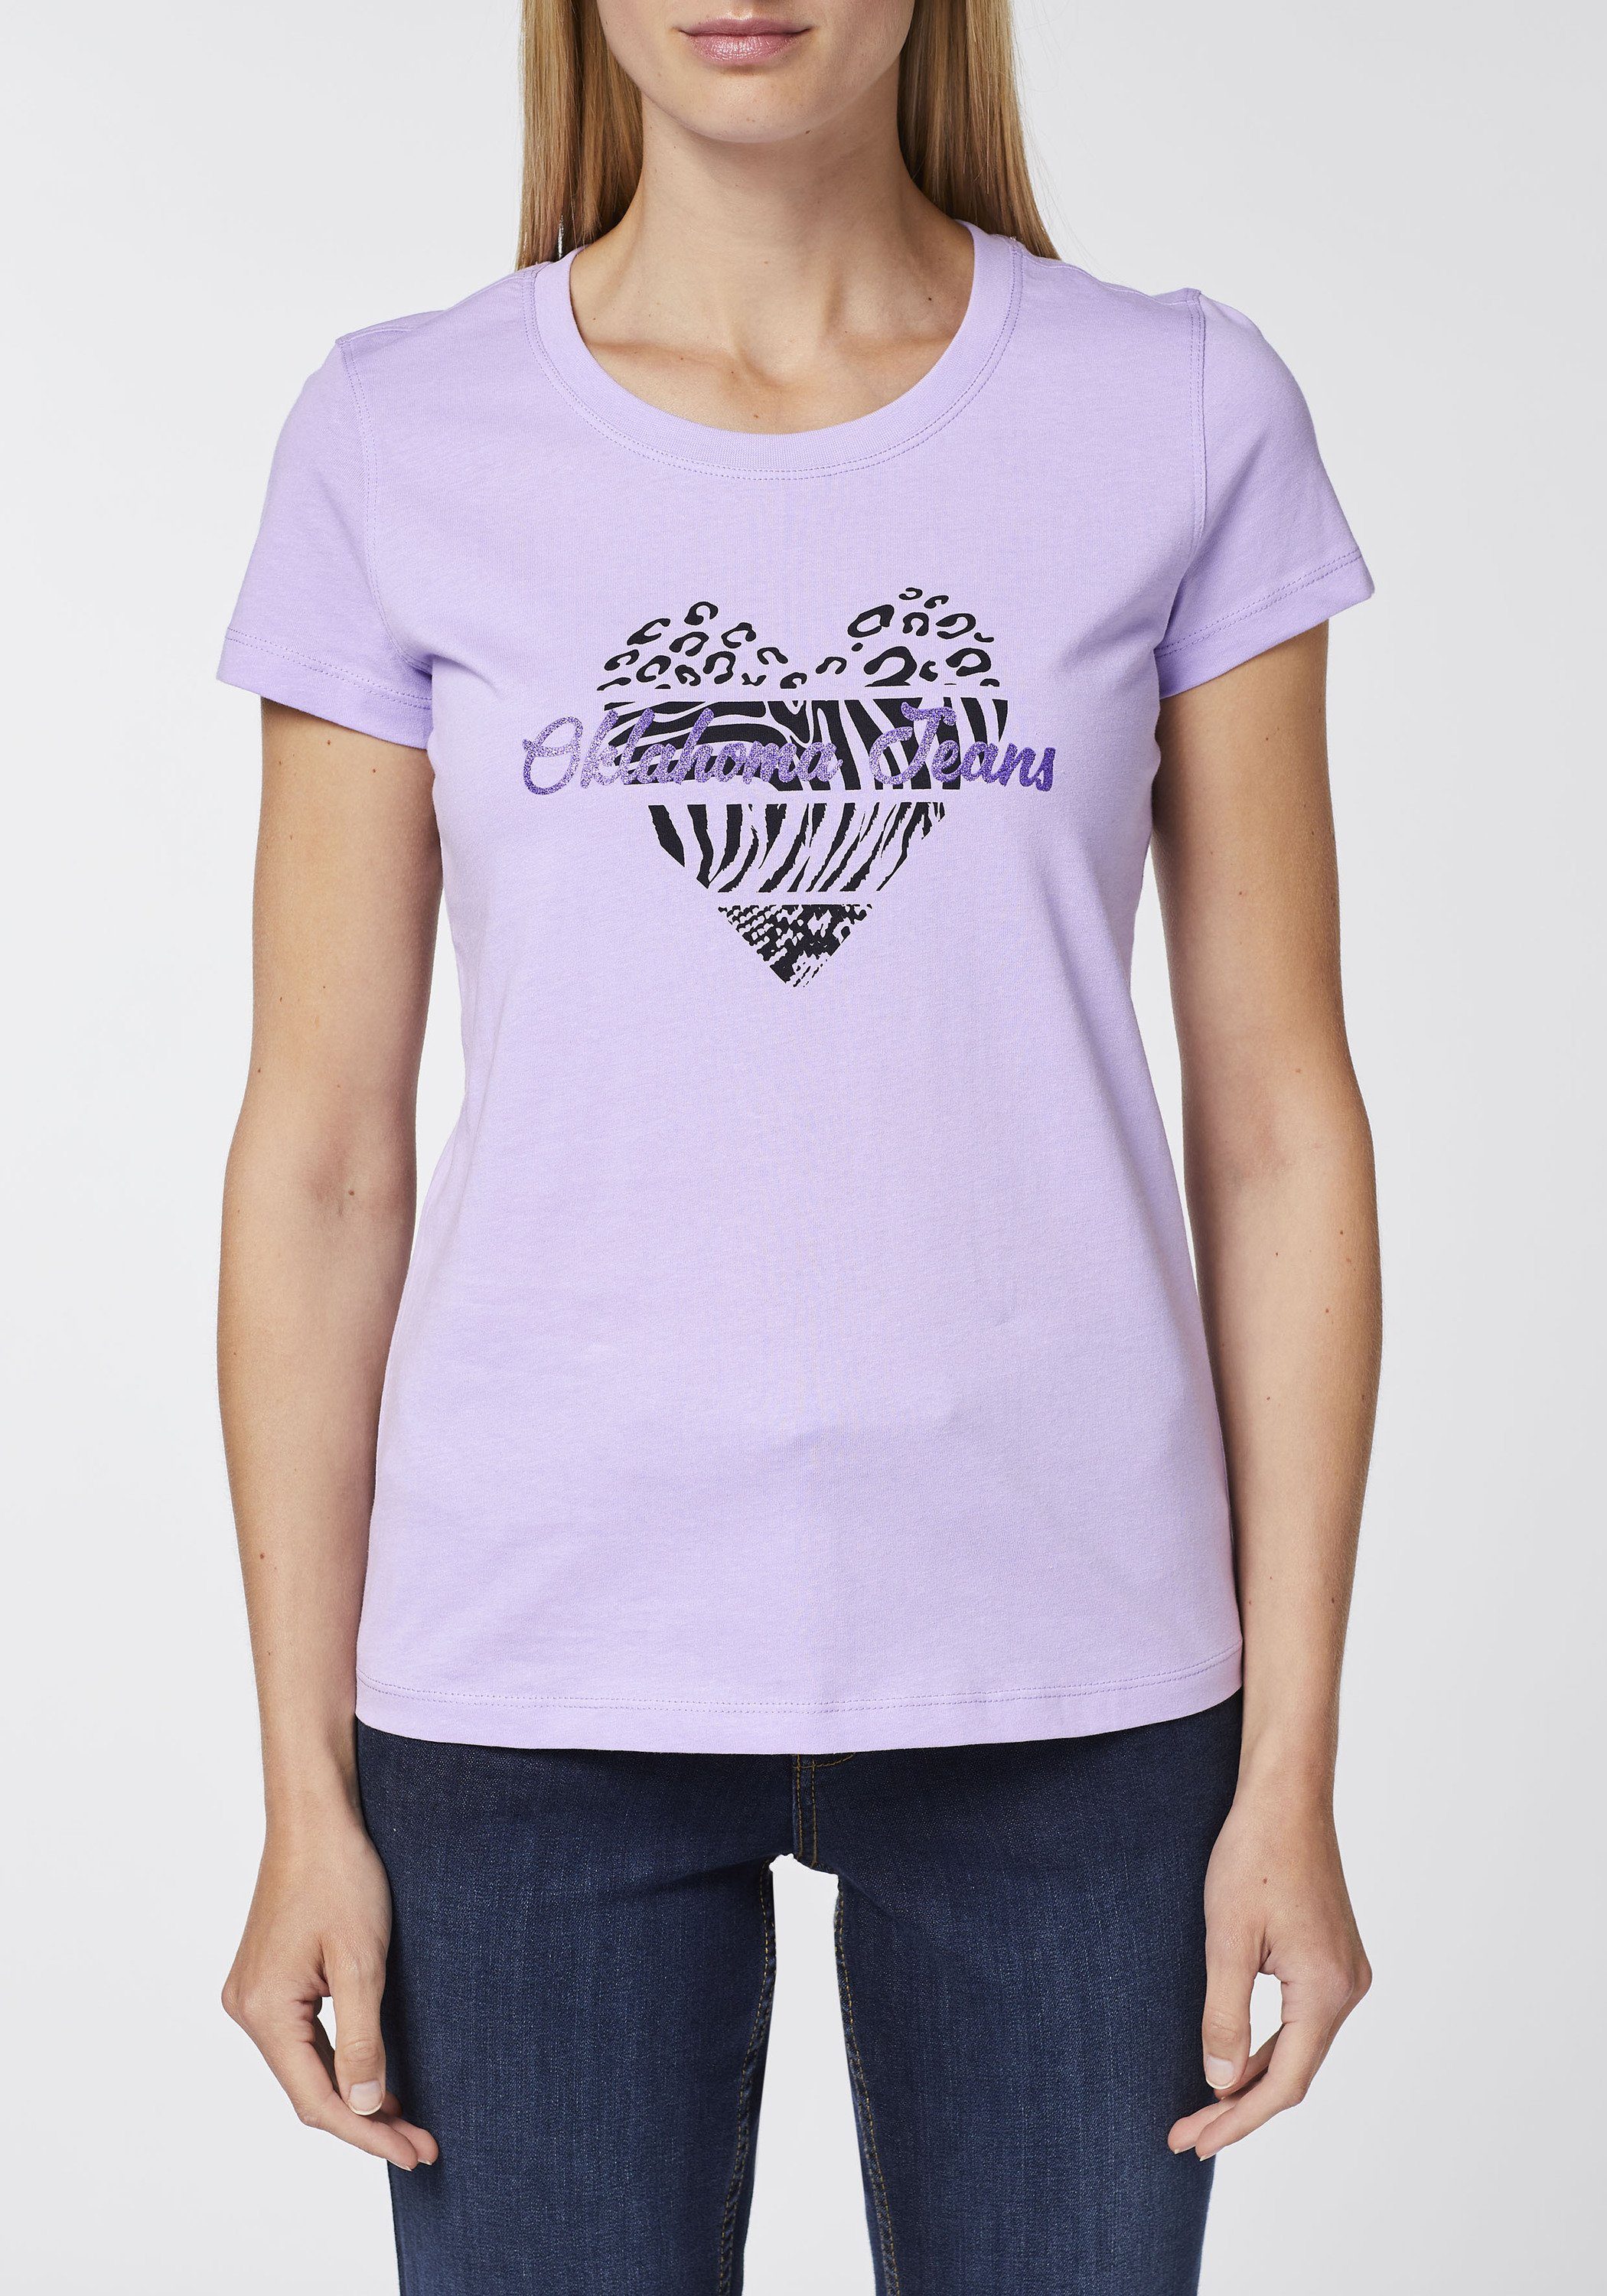 Rose mit 15-3716 Jeans Logo-Schriftzug Herz-Motiv Purple und Oklahoma Print-Shirt